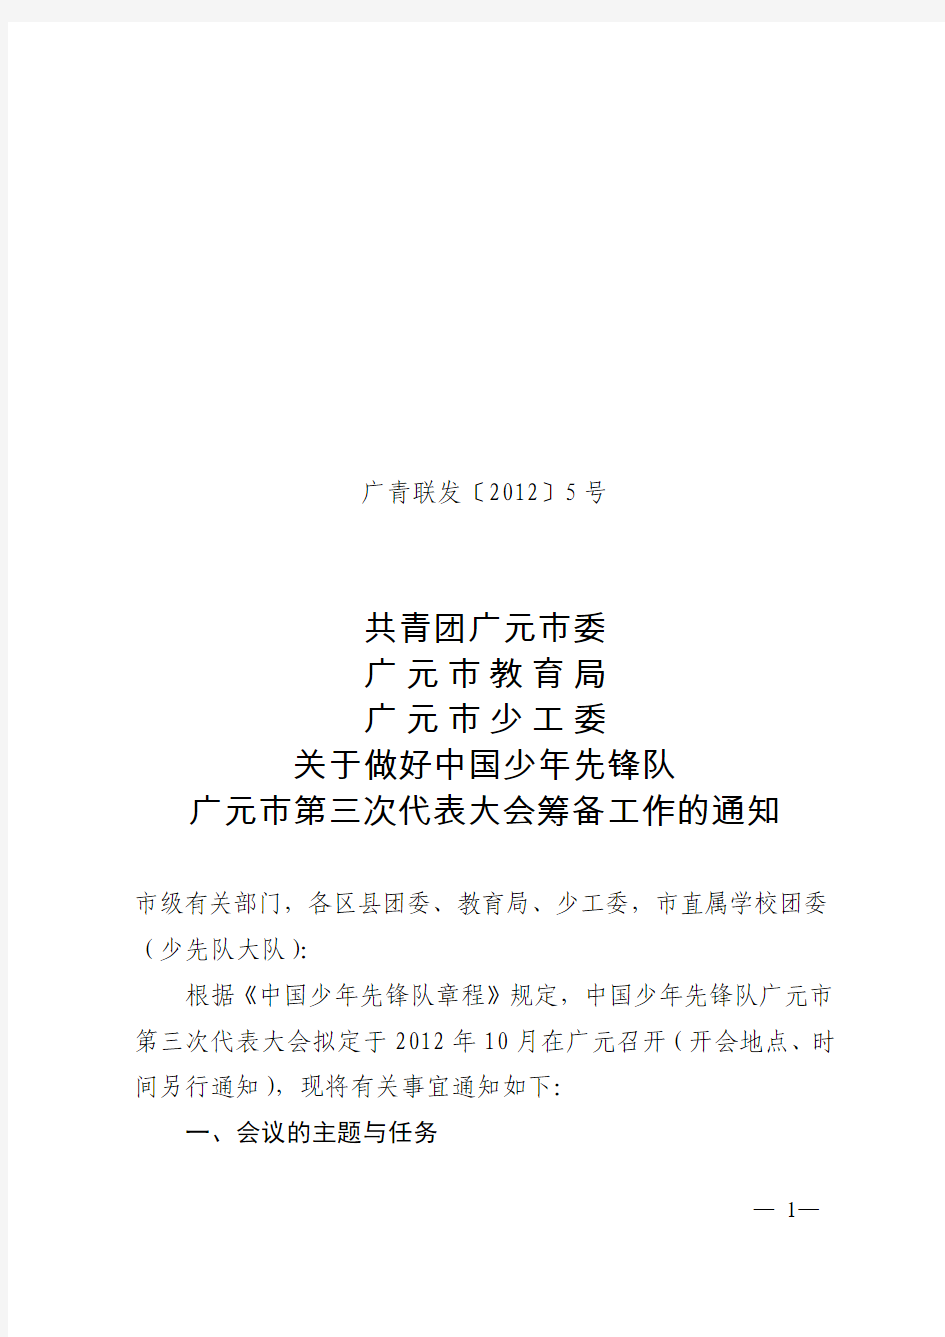 关于做好中国少年先锋队广元市第三次代表大会筹备工作的通知